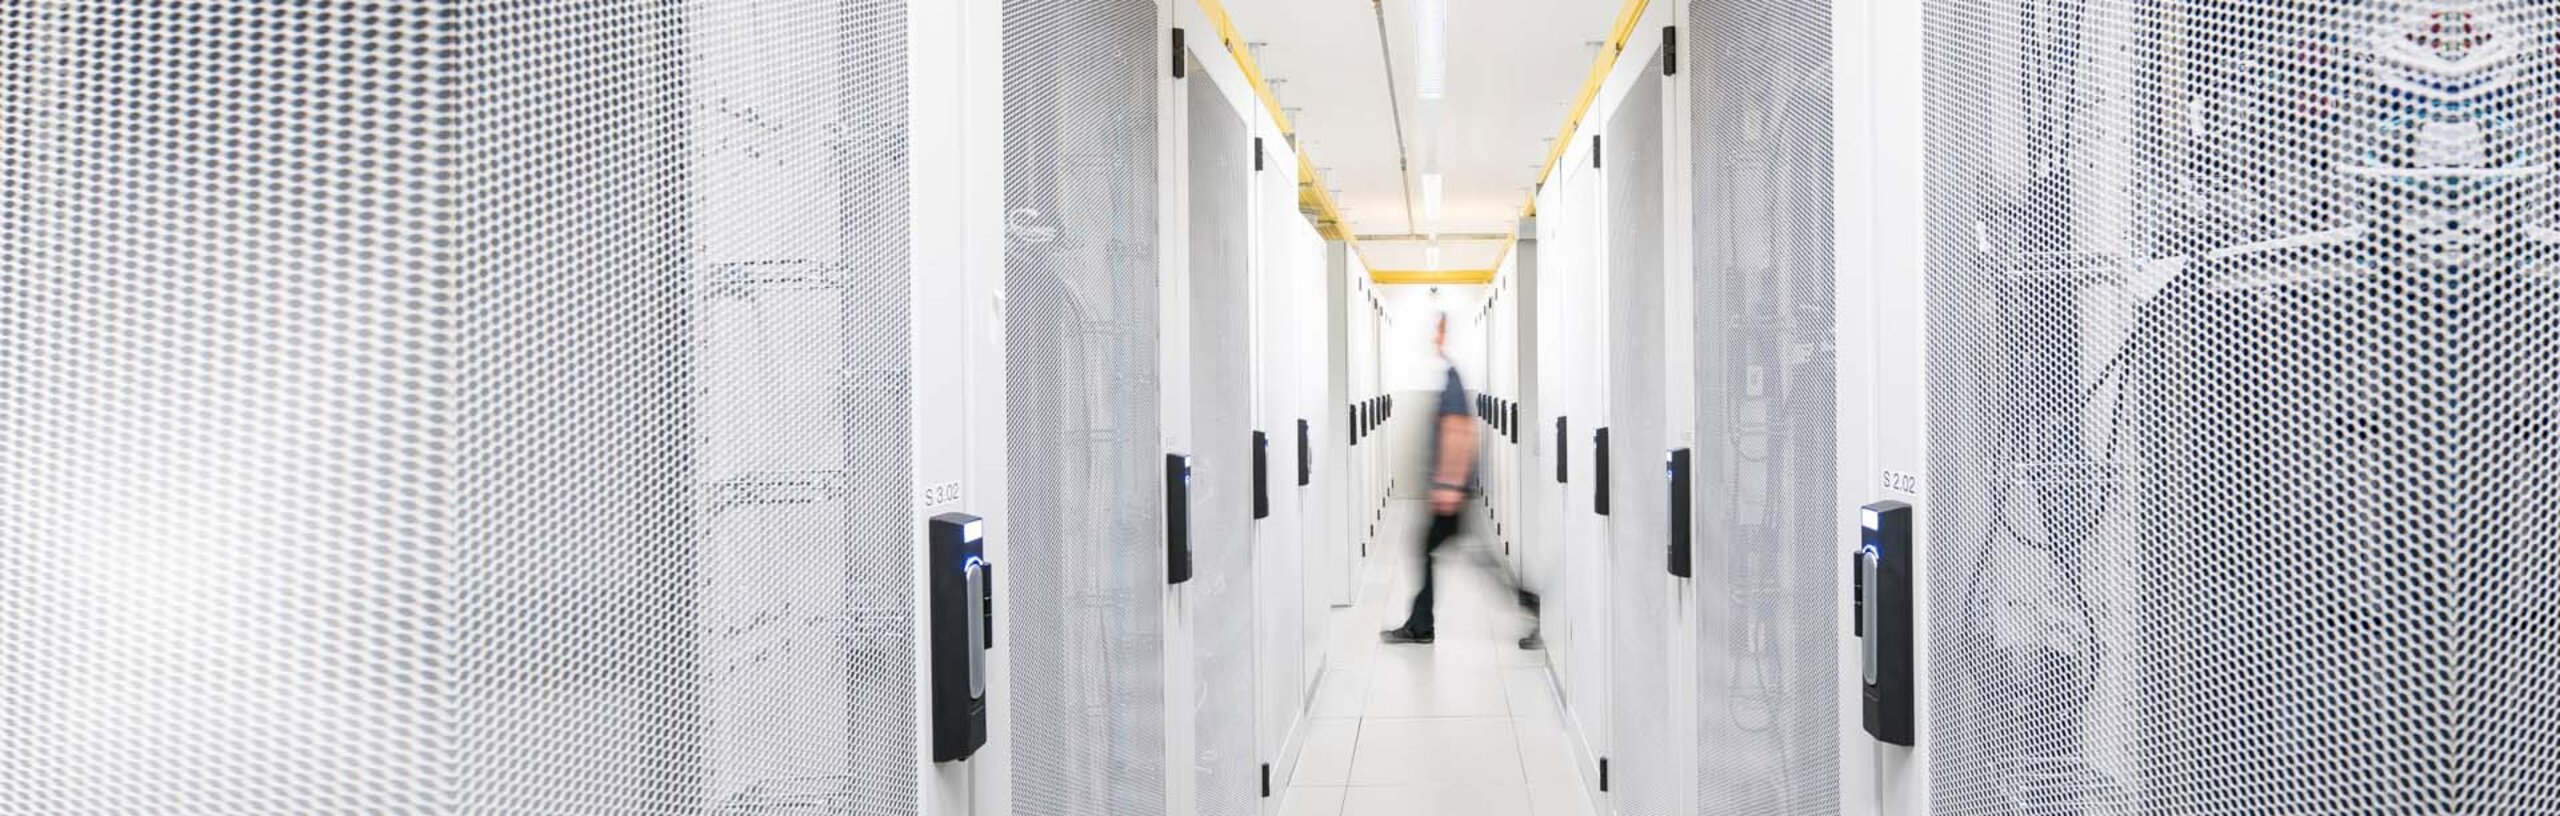 Ein Rechenzentrum mit hellen Server-Racks, im Hintergrund verschwommen eine gehende Person